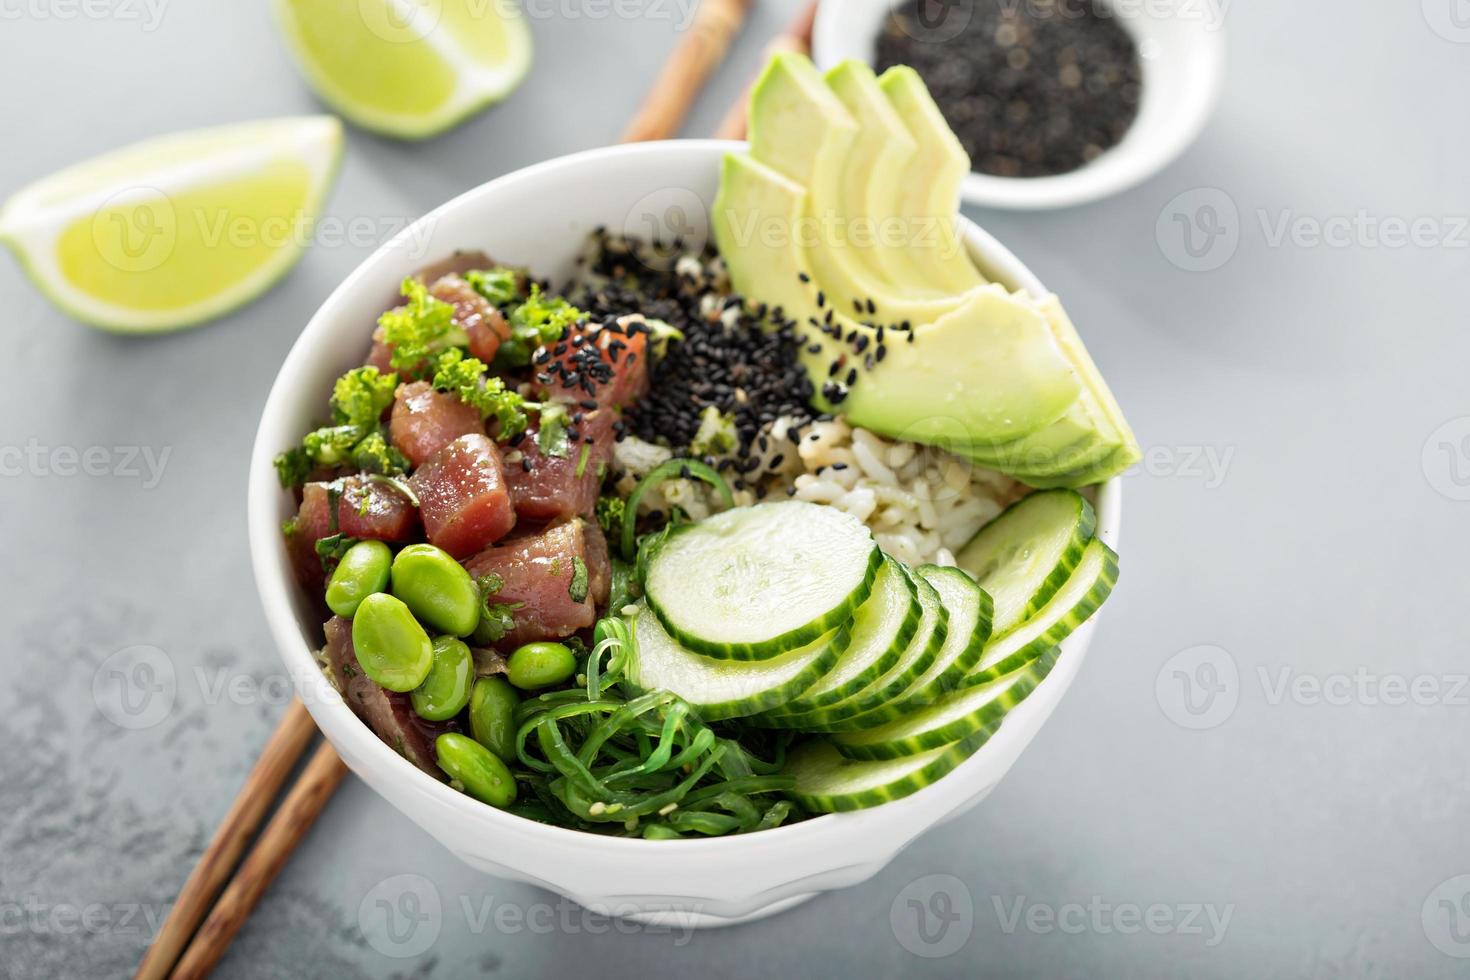 poke bowl com atum cru, arroz e legumes foto